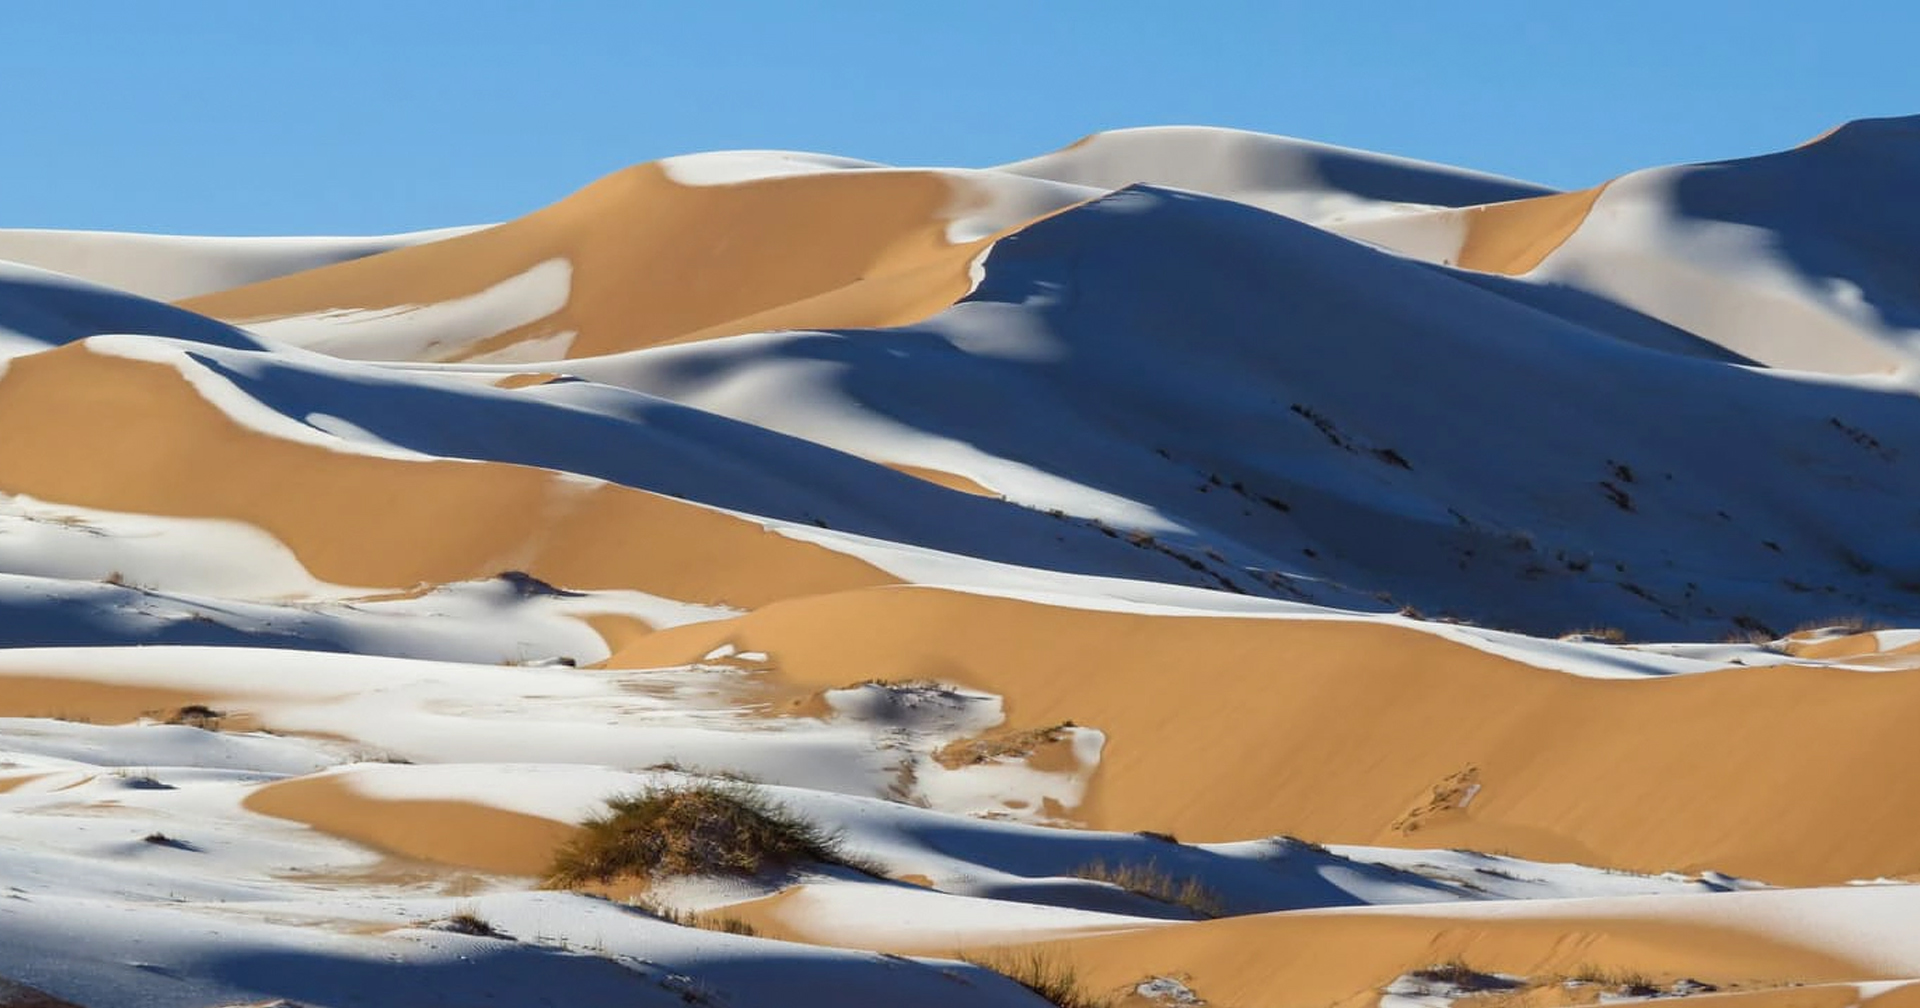 ชมภาพแปลกตา ‘หิมะตก’ ปกคลุม ‘ทะเลทรายซาฮารา’ ครั้งที่ 4 ในรอบ 42 ปี !